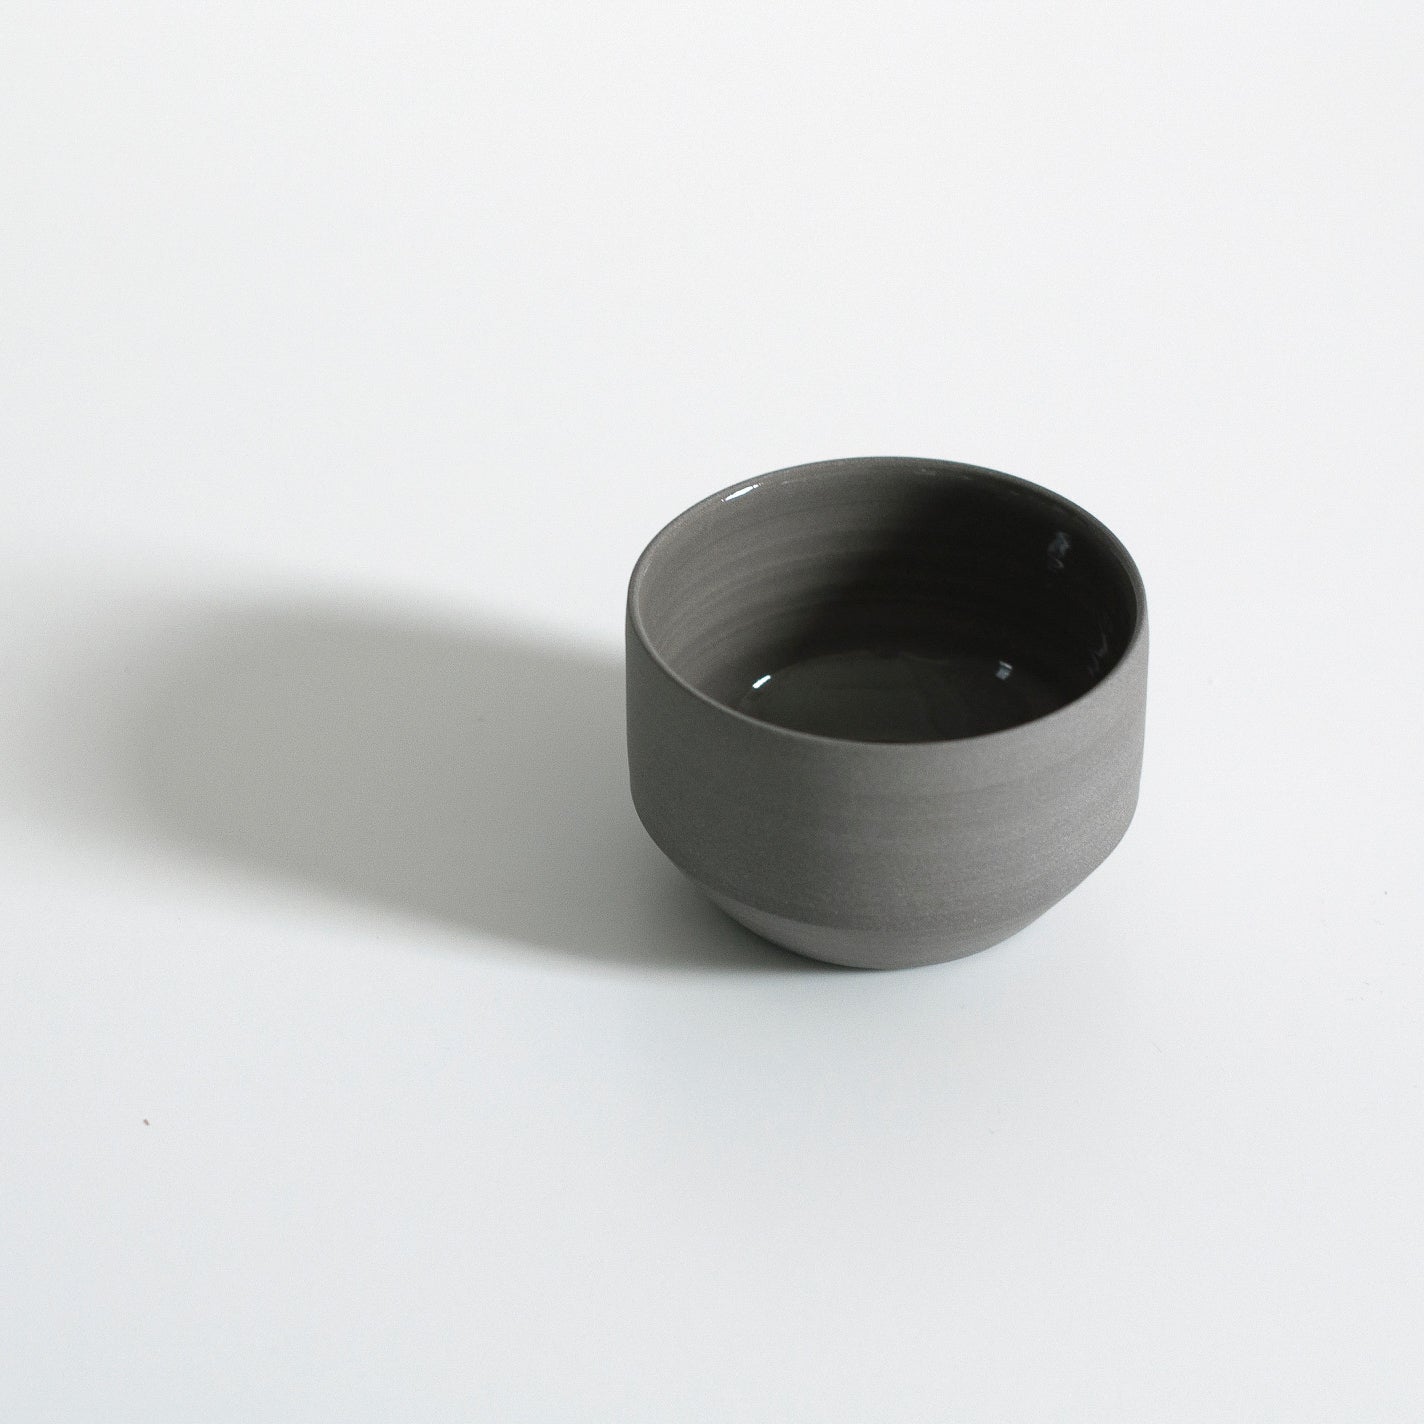 01 A New Kulhad Cup [8OZ] by Śurū x Studio Brae